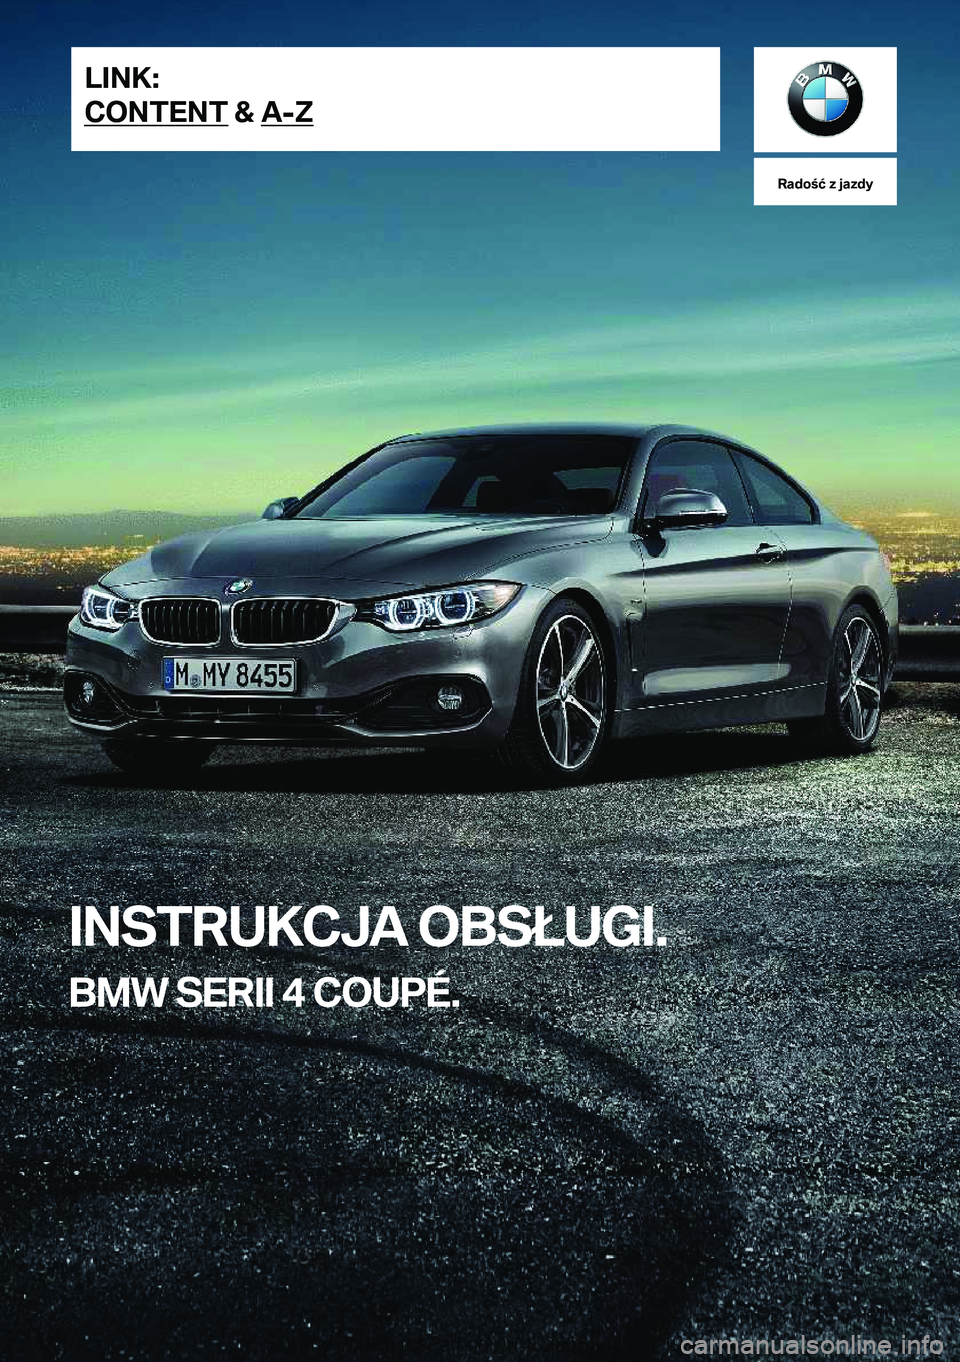 BMW 4 SERIES COUPE 2020  Instrukcja obsługi (in Polish) �R�a�d�o�ć��z��j�a�z�d�y
�I�N�S�T�R�U�K�C�J�A��O�B�S�Ł�U�G�I�.
�B�M�W��S�E�R�I�I��4��C�O�U�P�